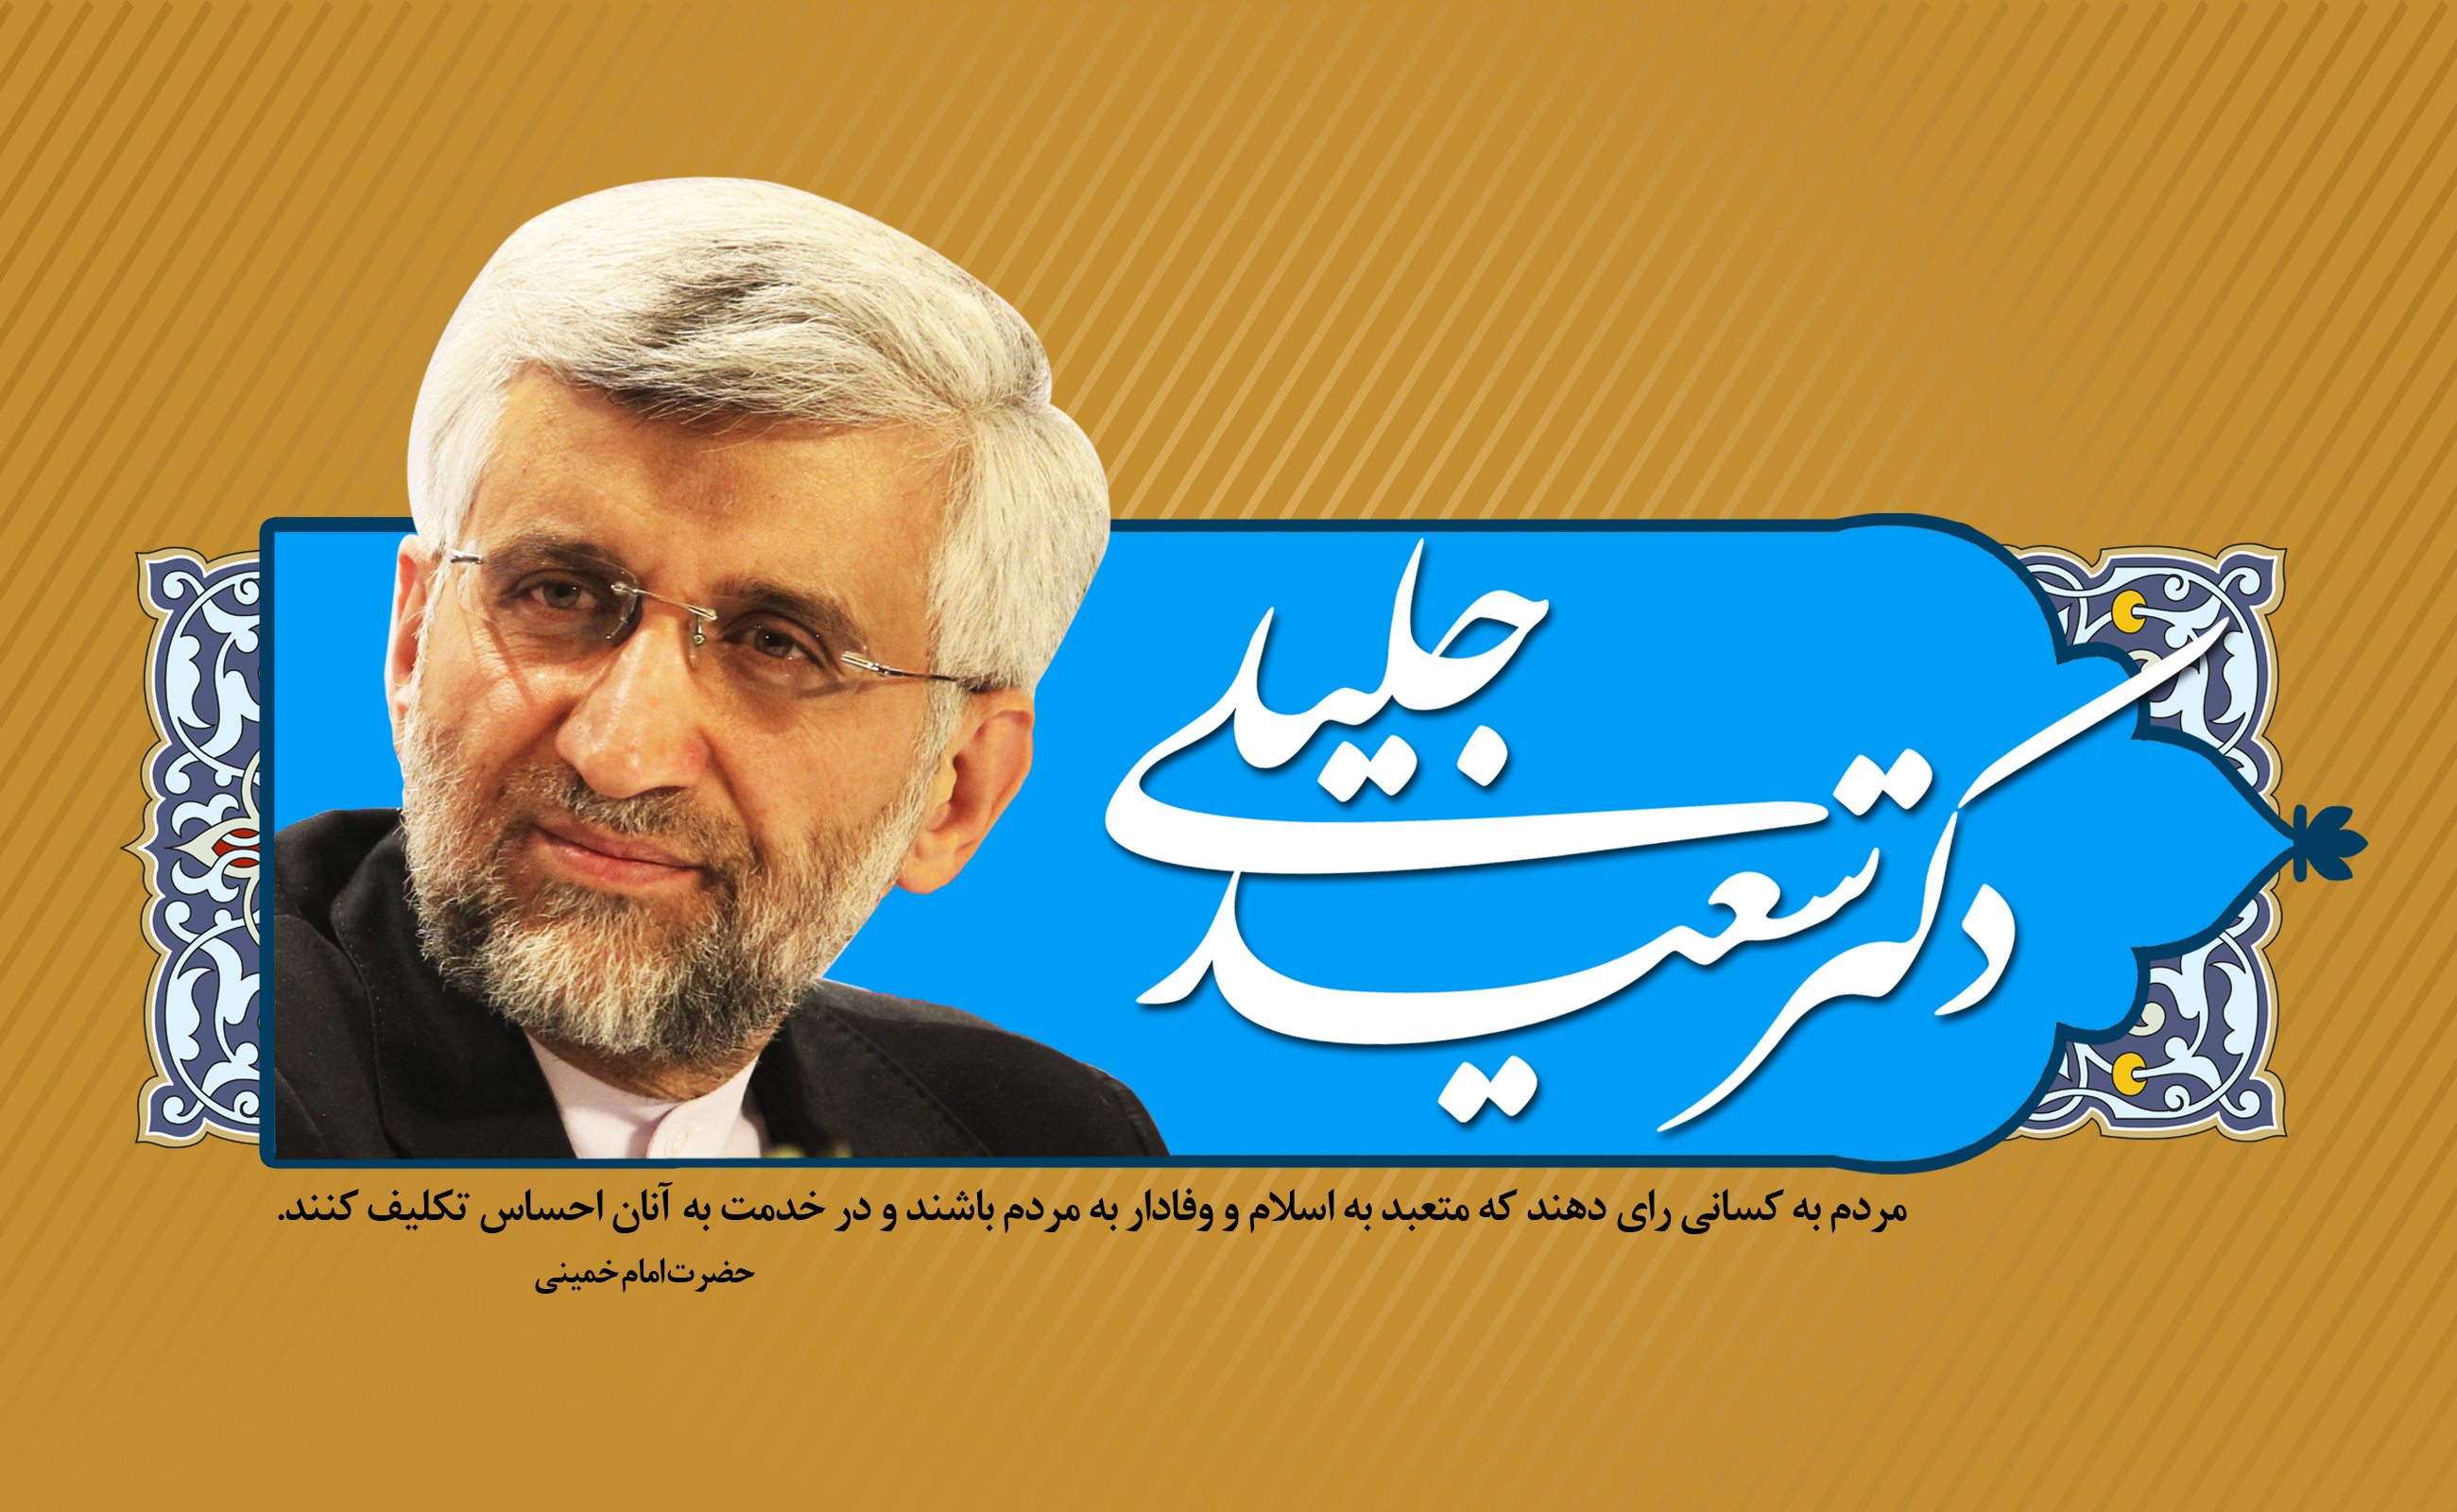 تمام ضعف های دولت خاتمی در مذاکرات با گروه سلطه طلب 5+1 در دولت احمدی نژاد فقط با بصیرت آقای سعید جلیلی انجام گرفت 